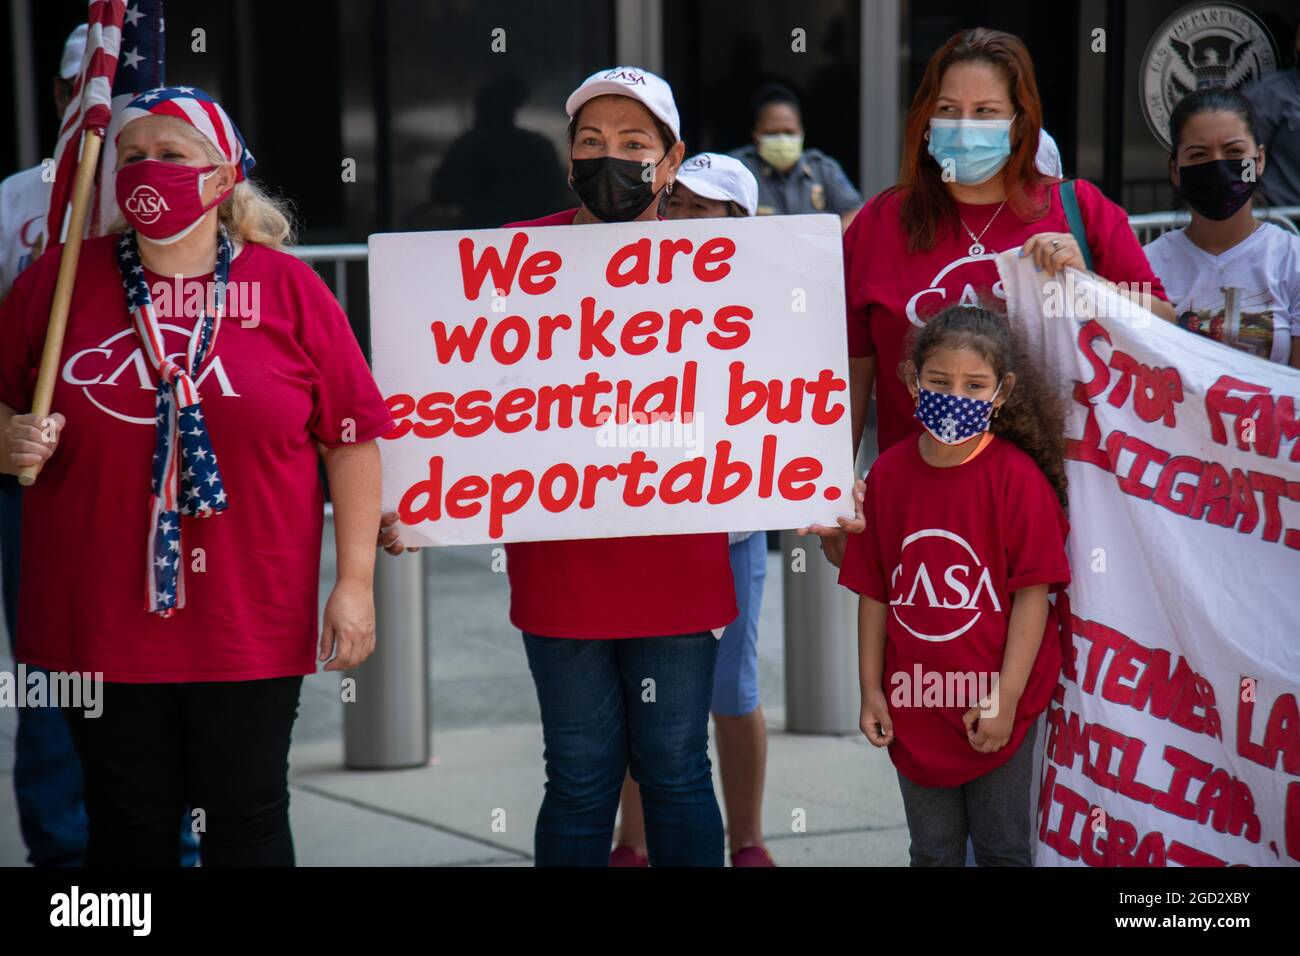 Mitglieder der CASA, einer Basisorganisation für Immigranten, protestieren am 10. August 2021 am Hauptsitz der US-Einwanderungs- und Zollbehörde in Washington, DC, gegen eine Einwanderungsreform. (Foto: Matthew Rodier/Sipa USA) Quelle: SIPA USA/Alamy Live News Stockfoto